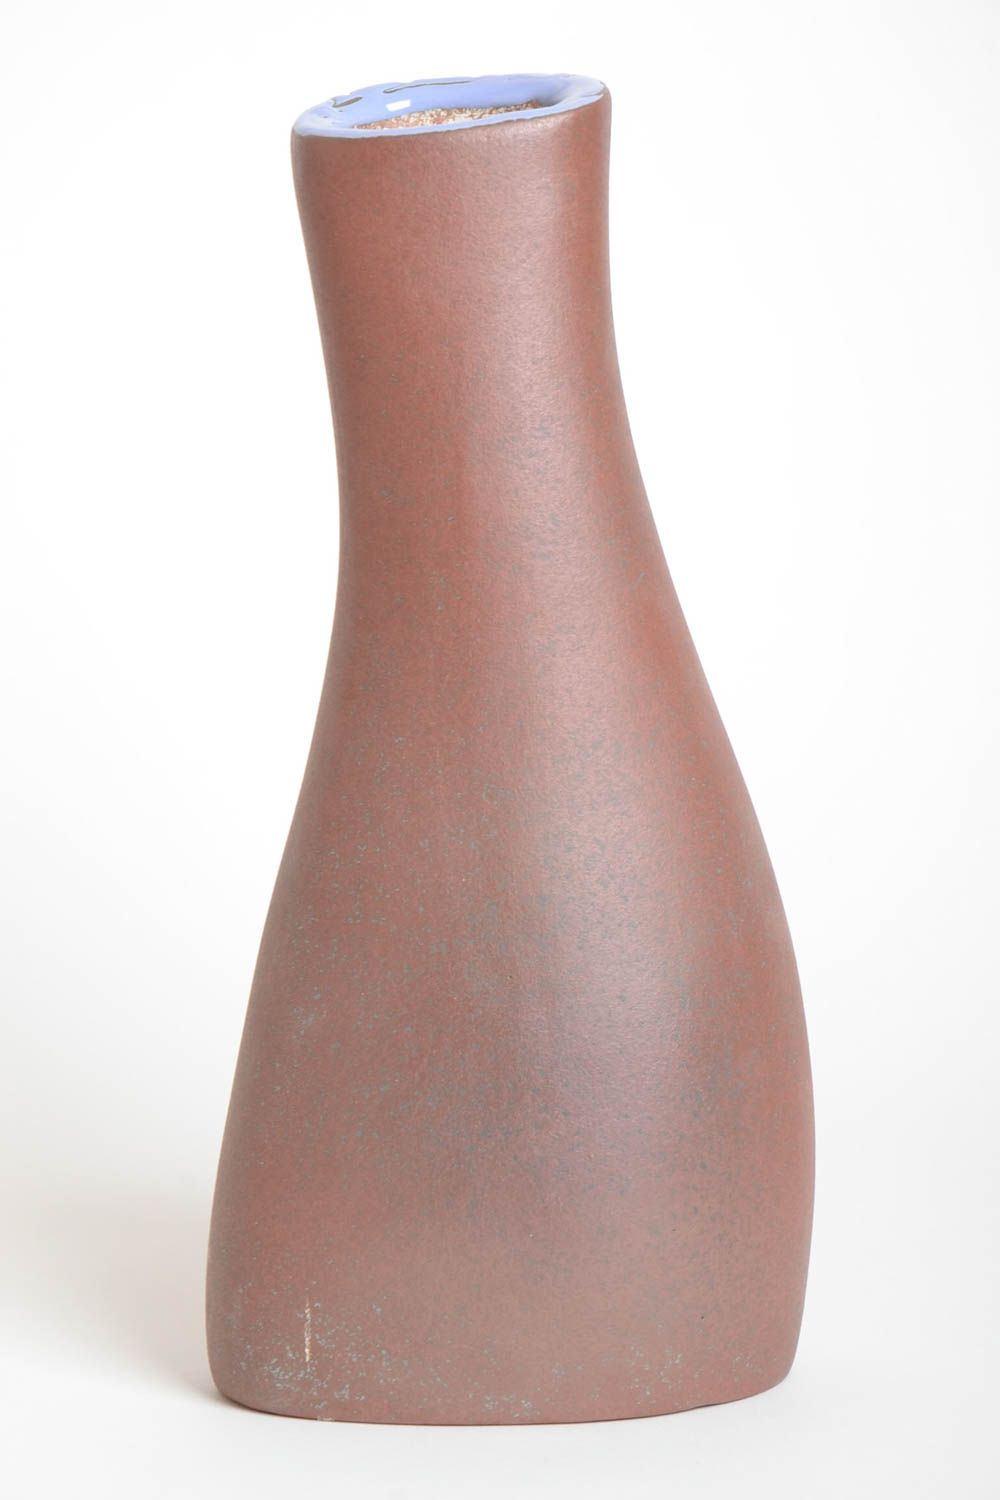 Ваза для декора сувенир ручной работы предмет декора ваза из глины 1.7 л фото 4